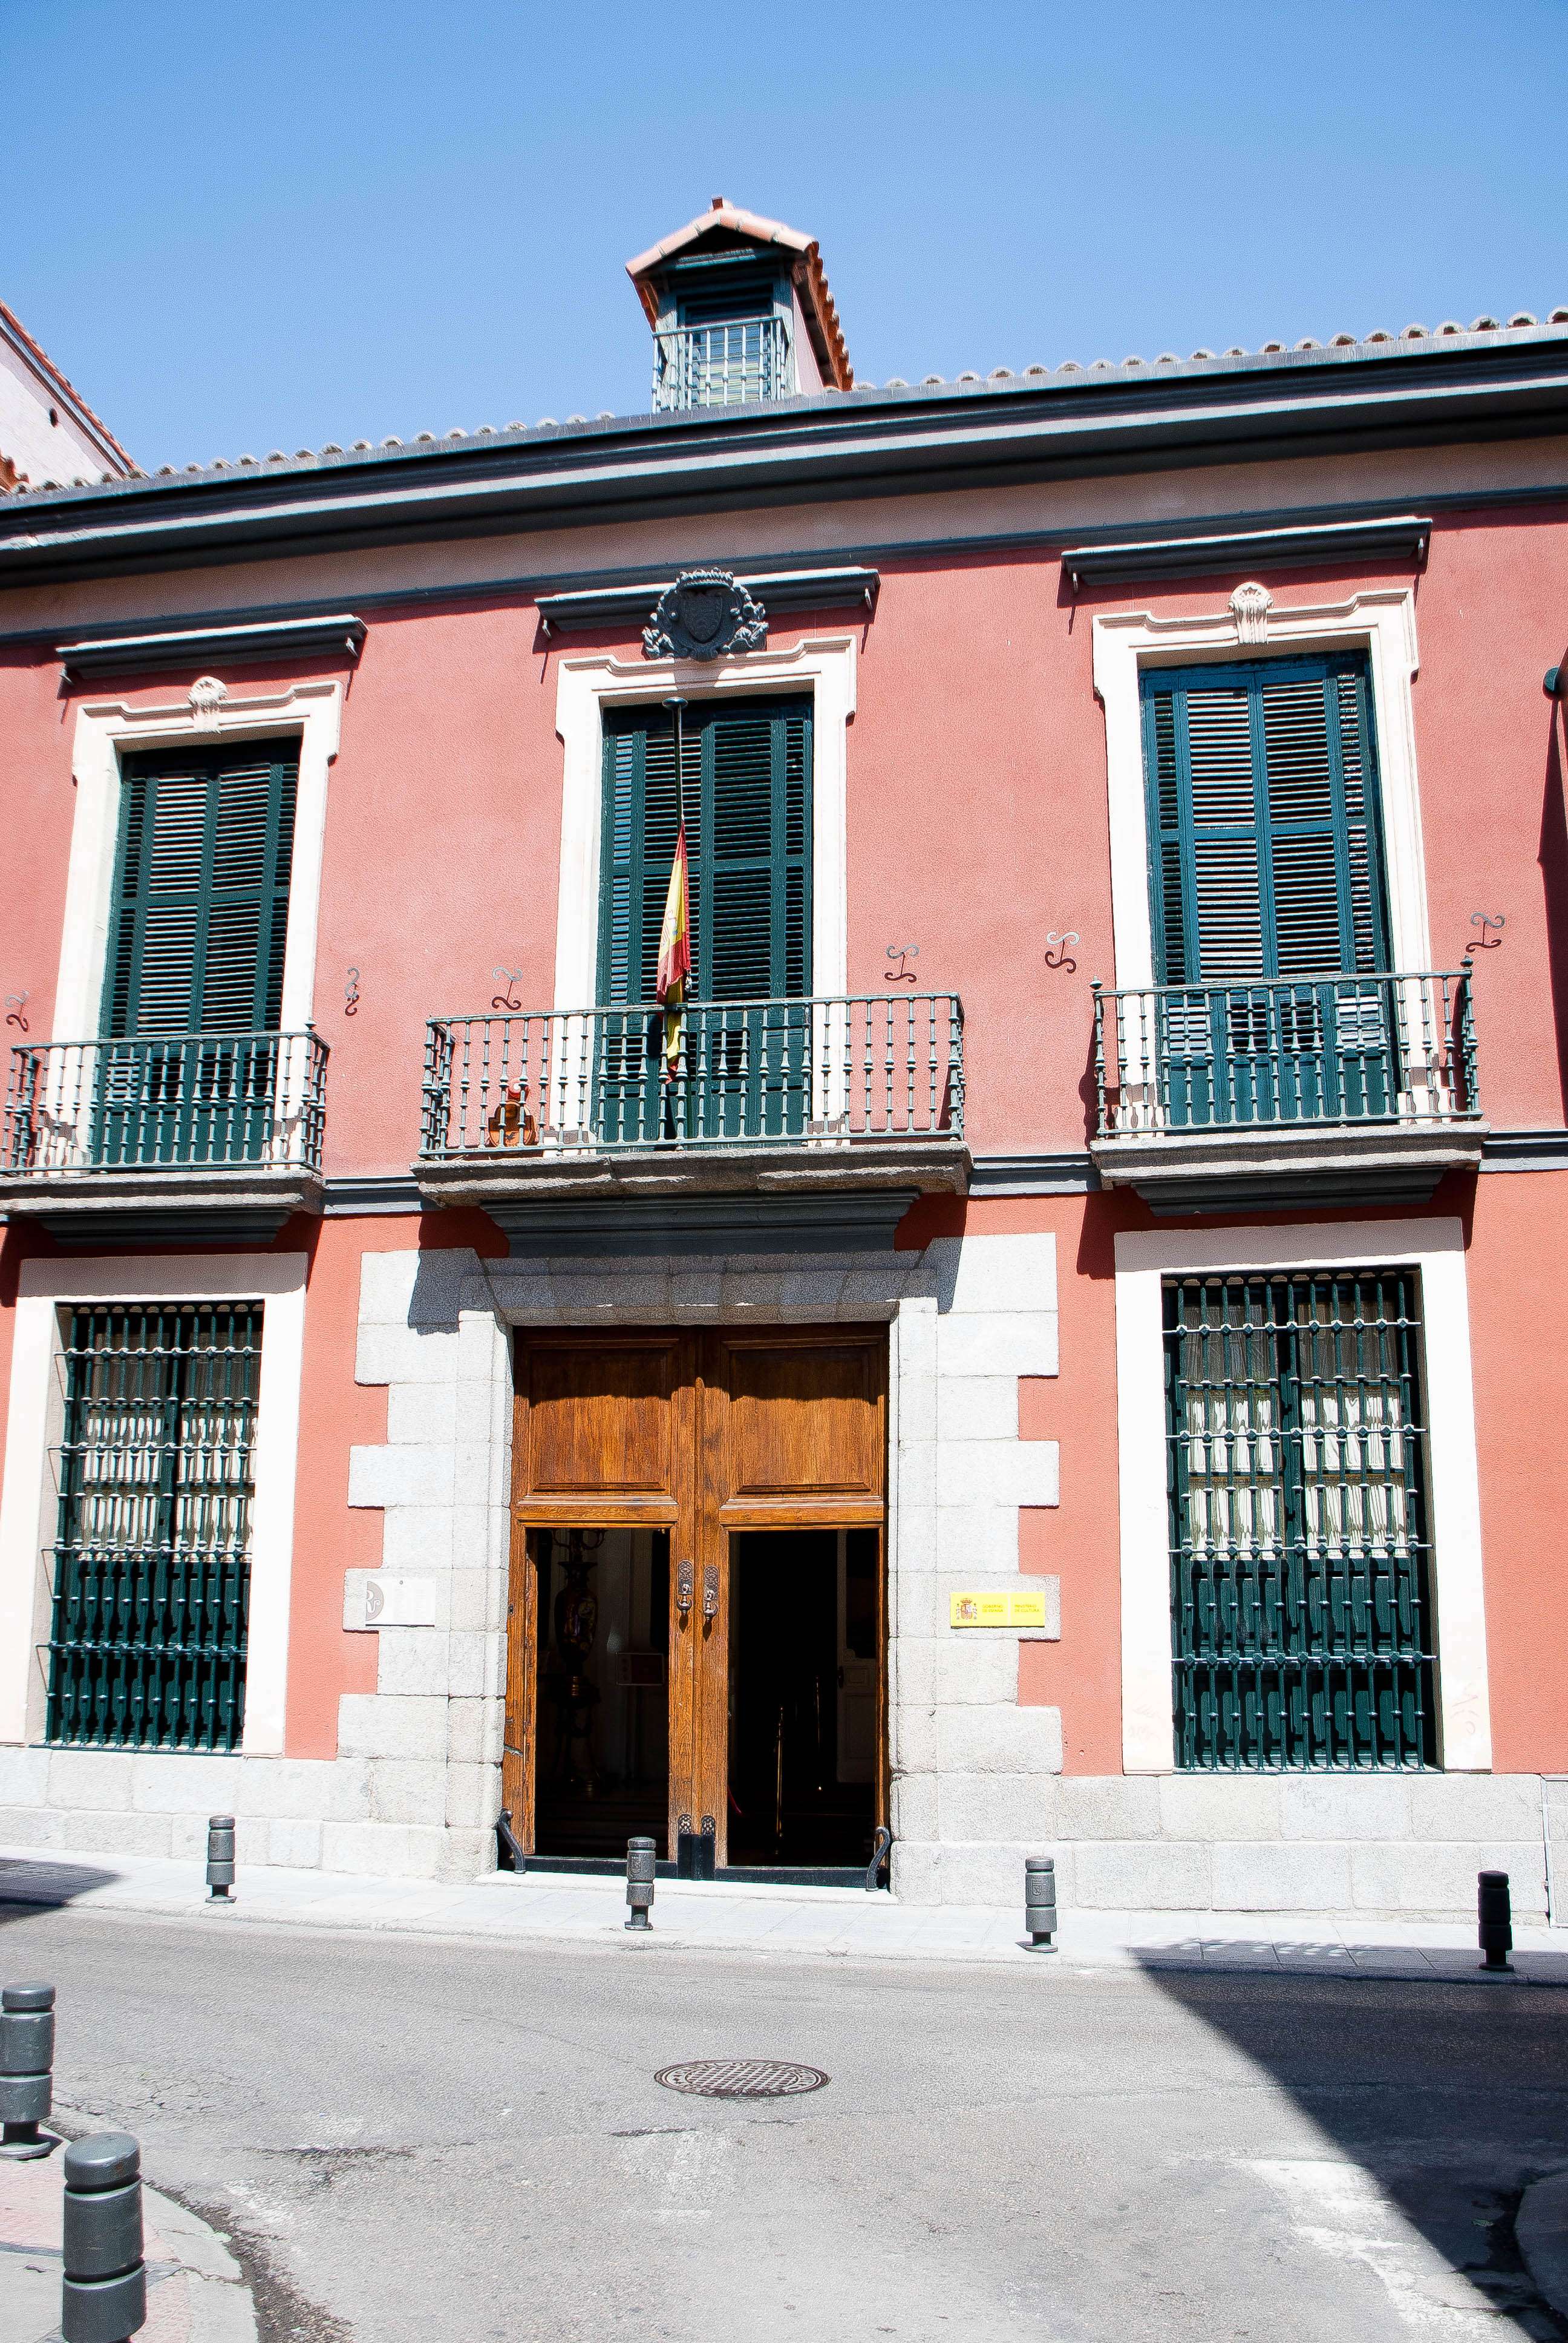 El museo del romanticismo - El Madrid olvidado (2)